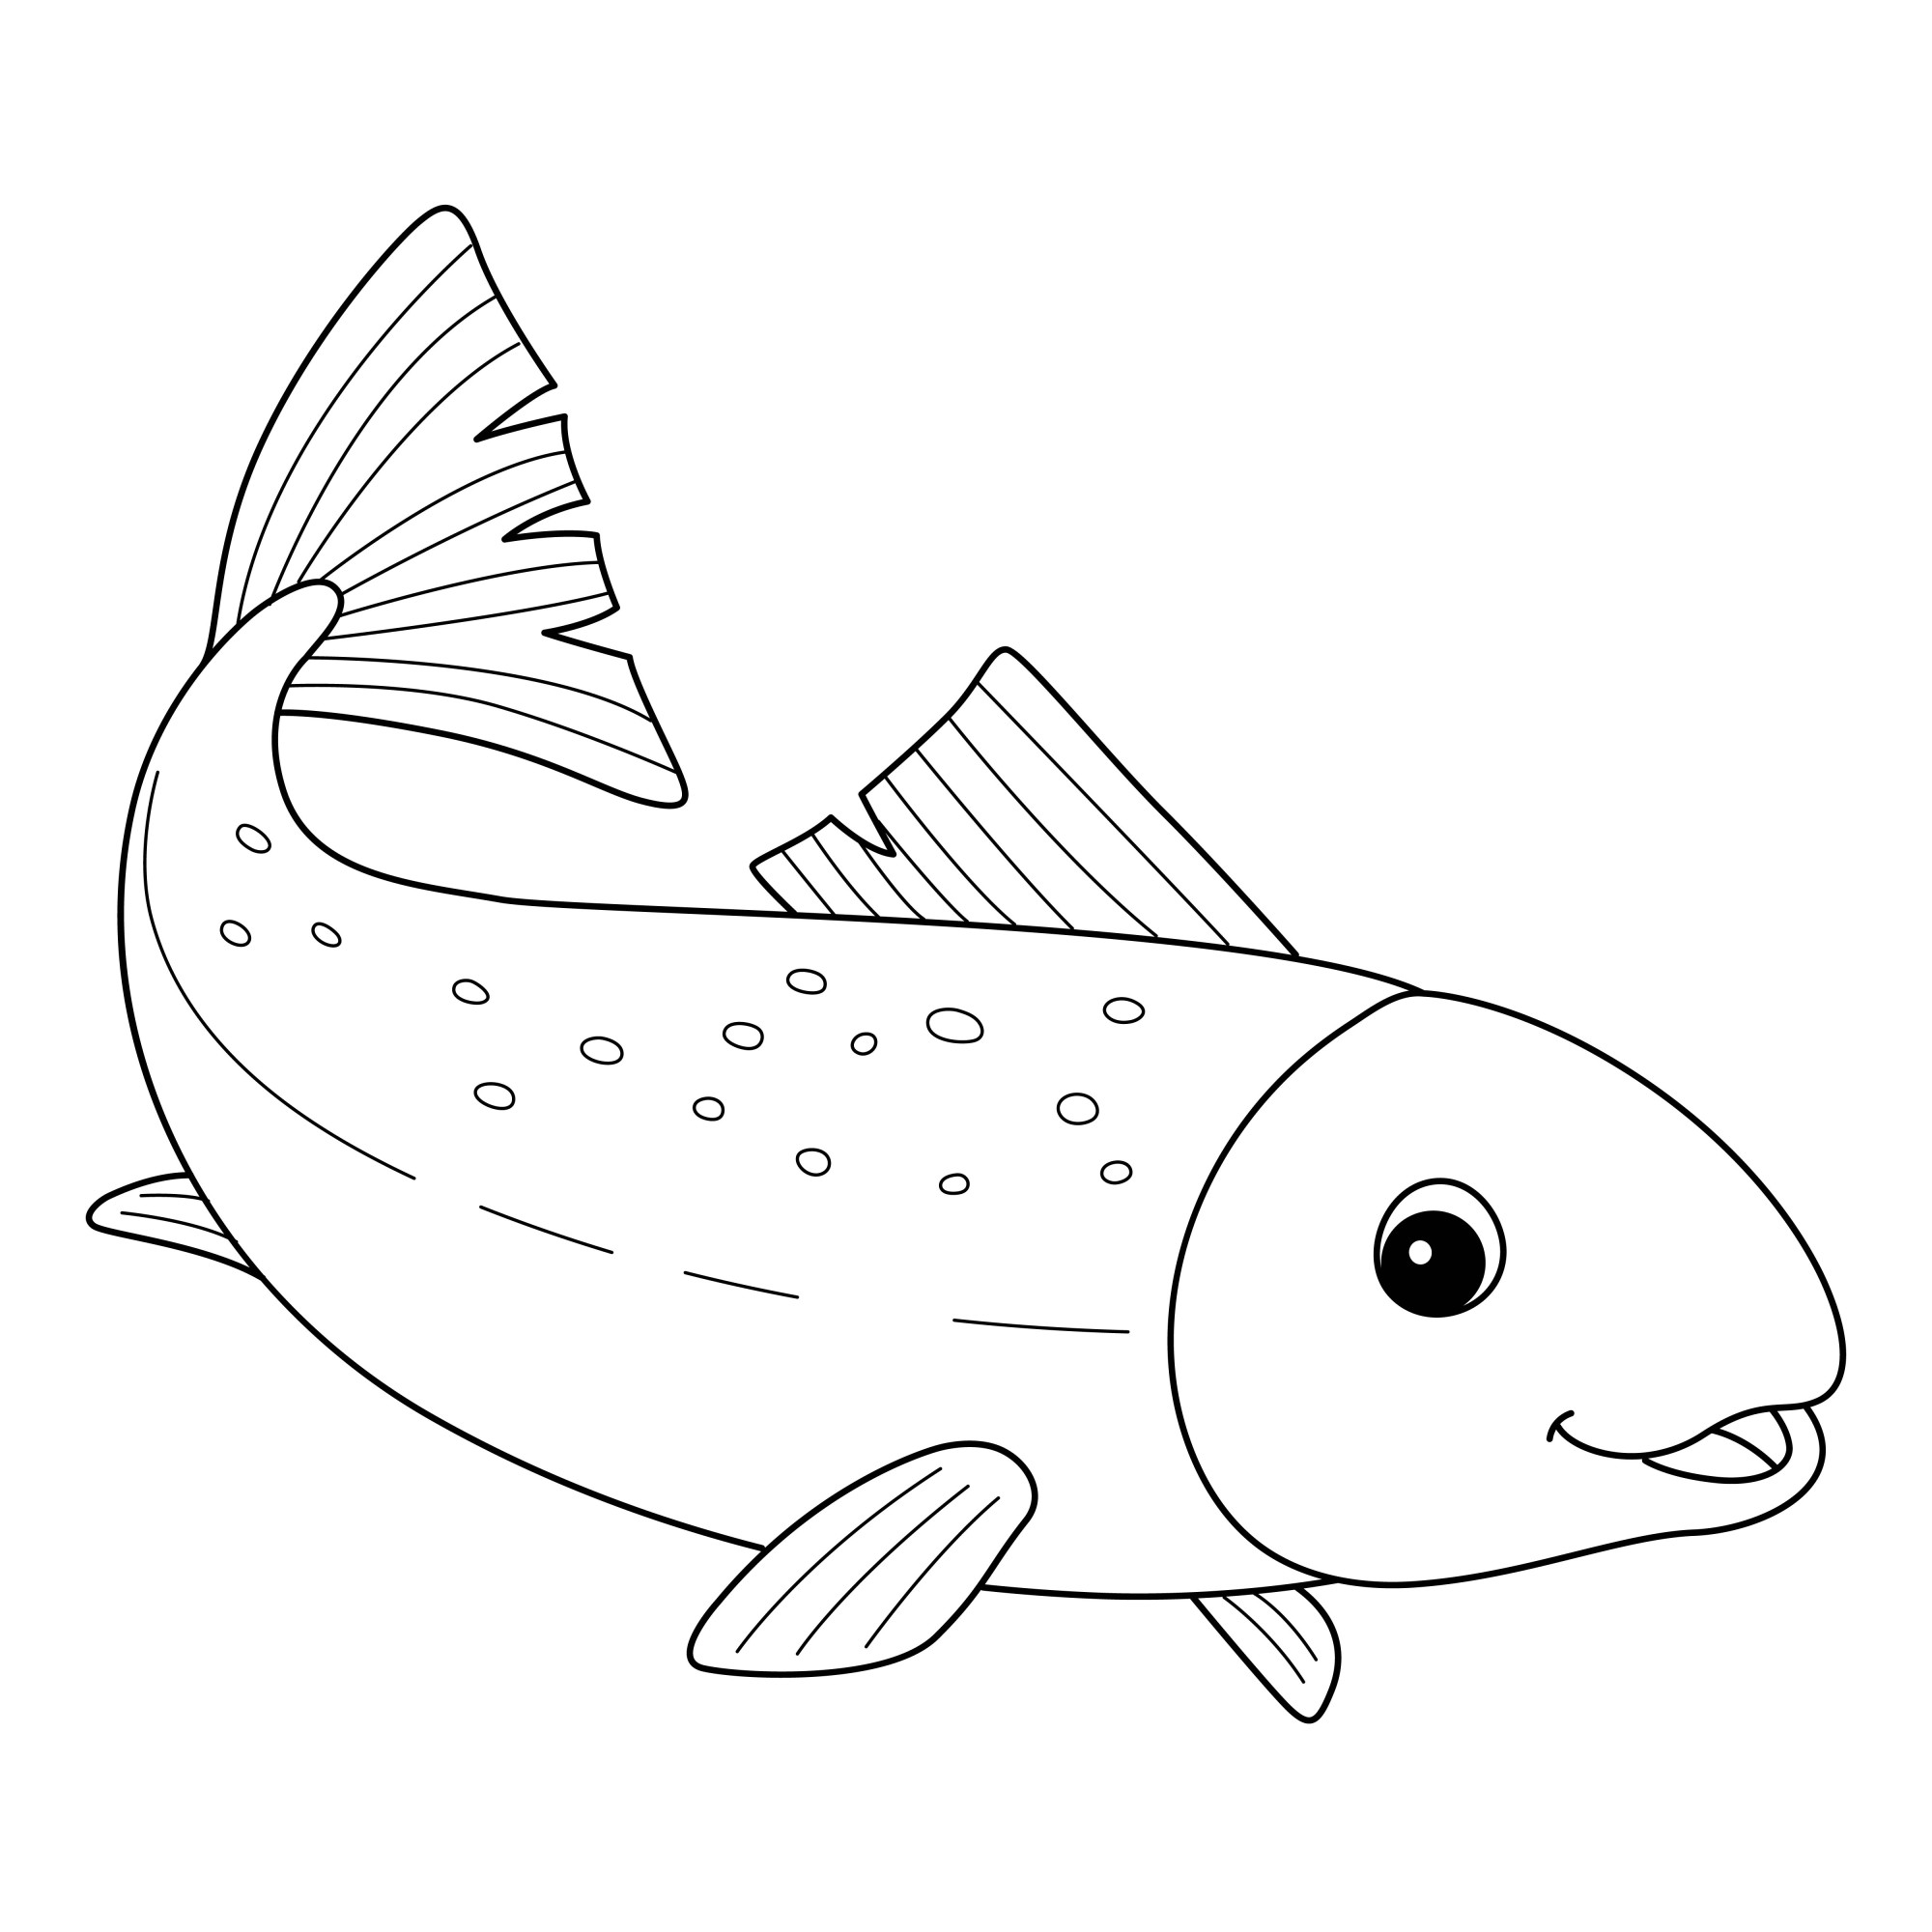 Раскраска для детей: рыба судак